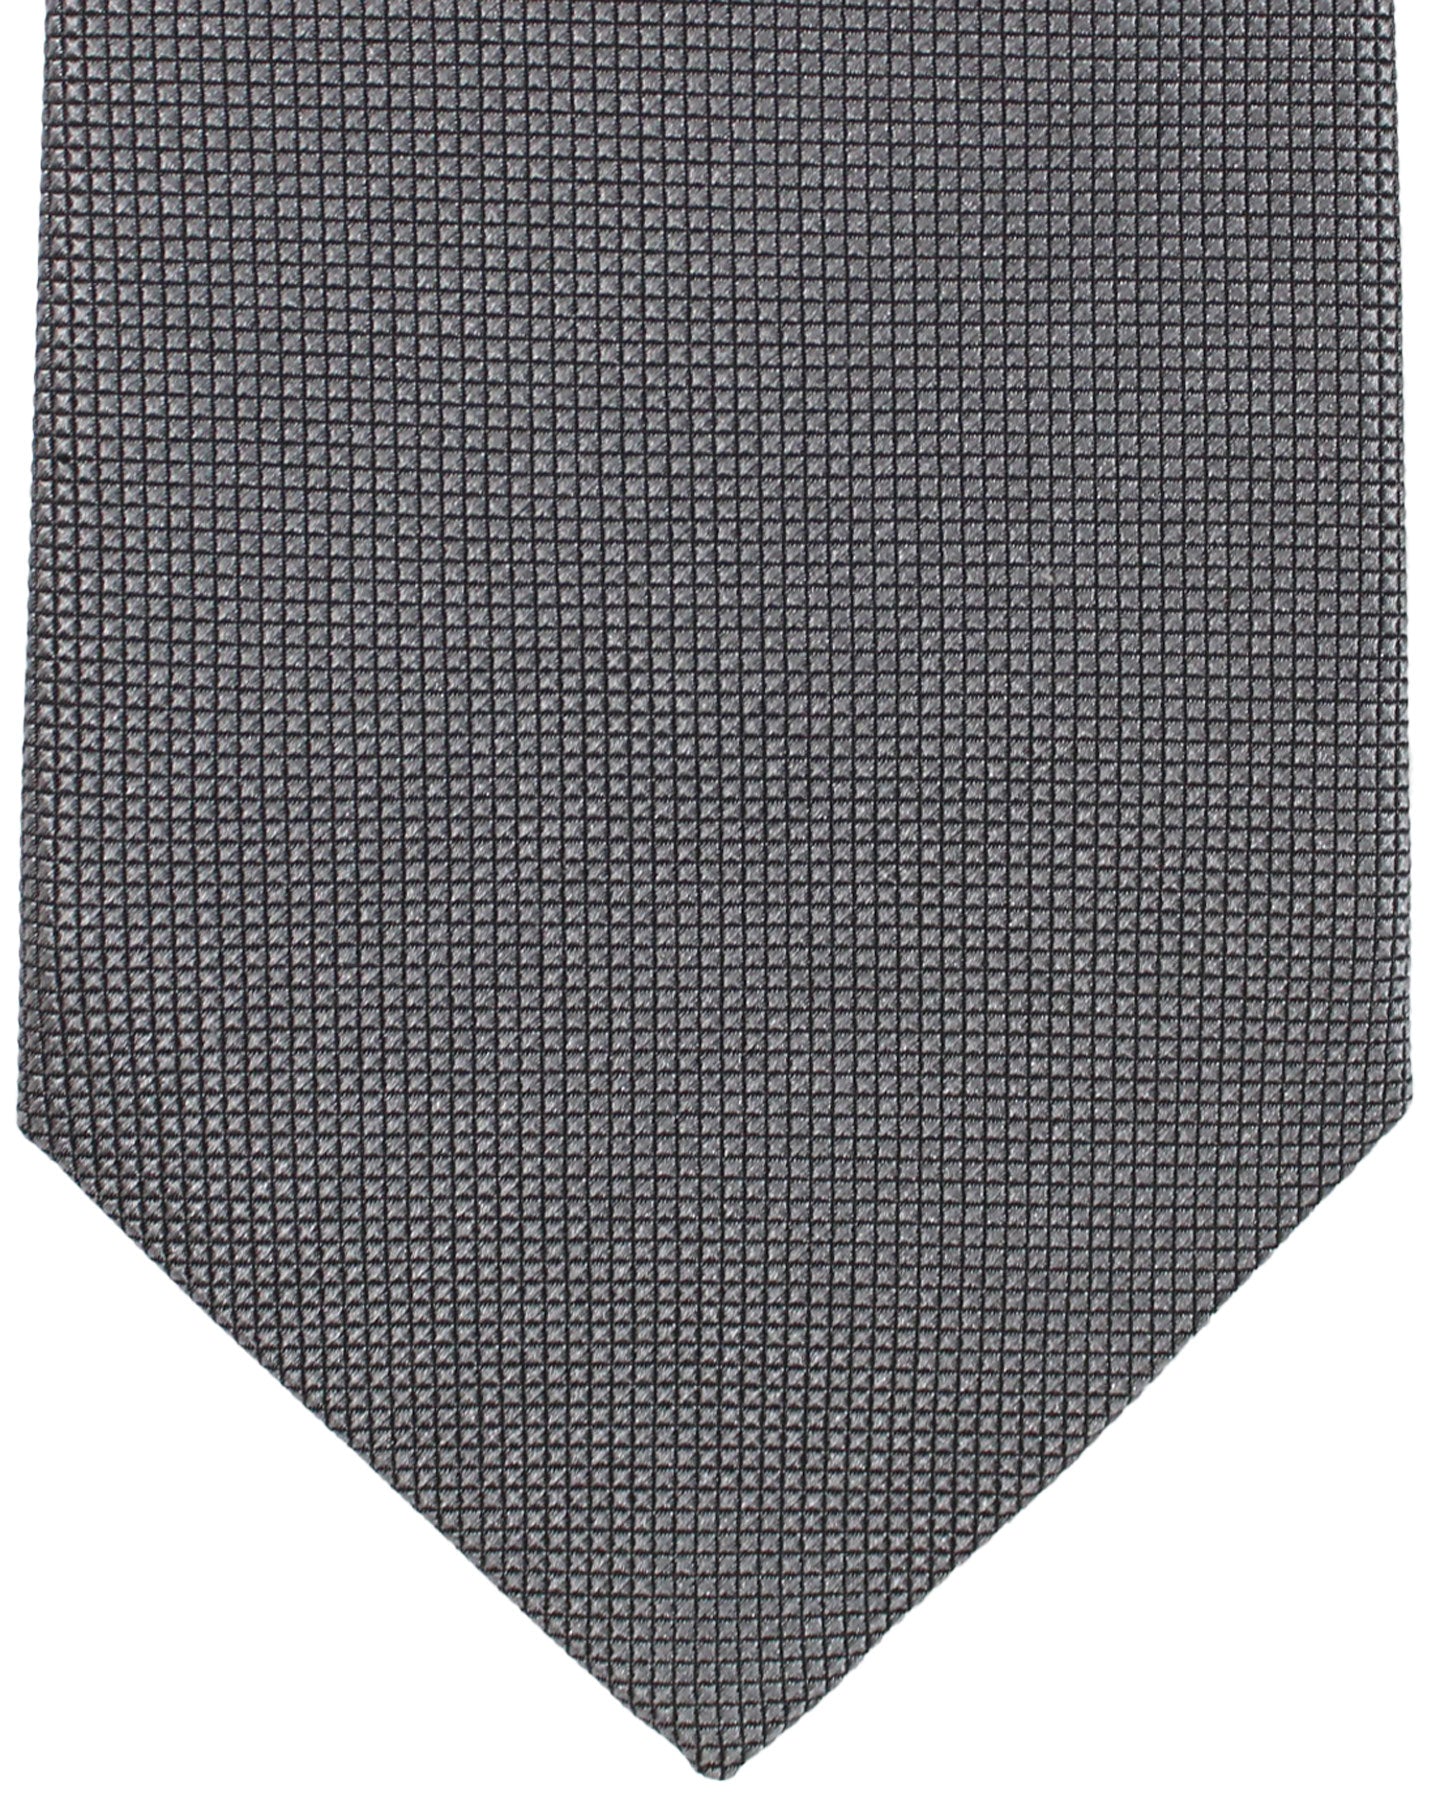 Zilli Silk Sevenfold Tie Charcoal Gray Micro Check